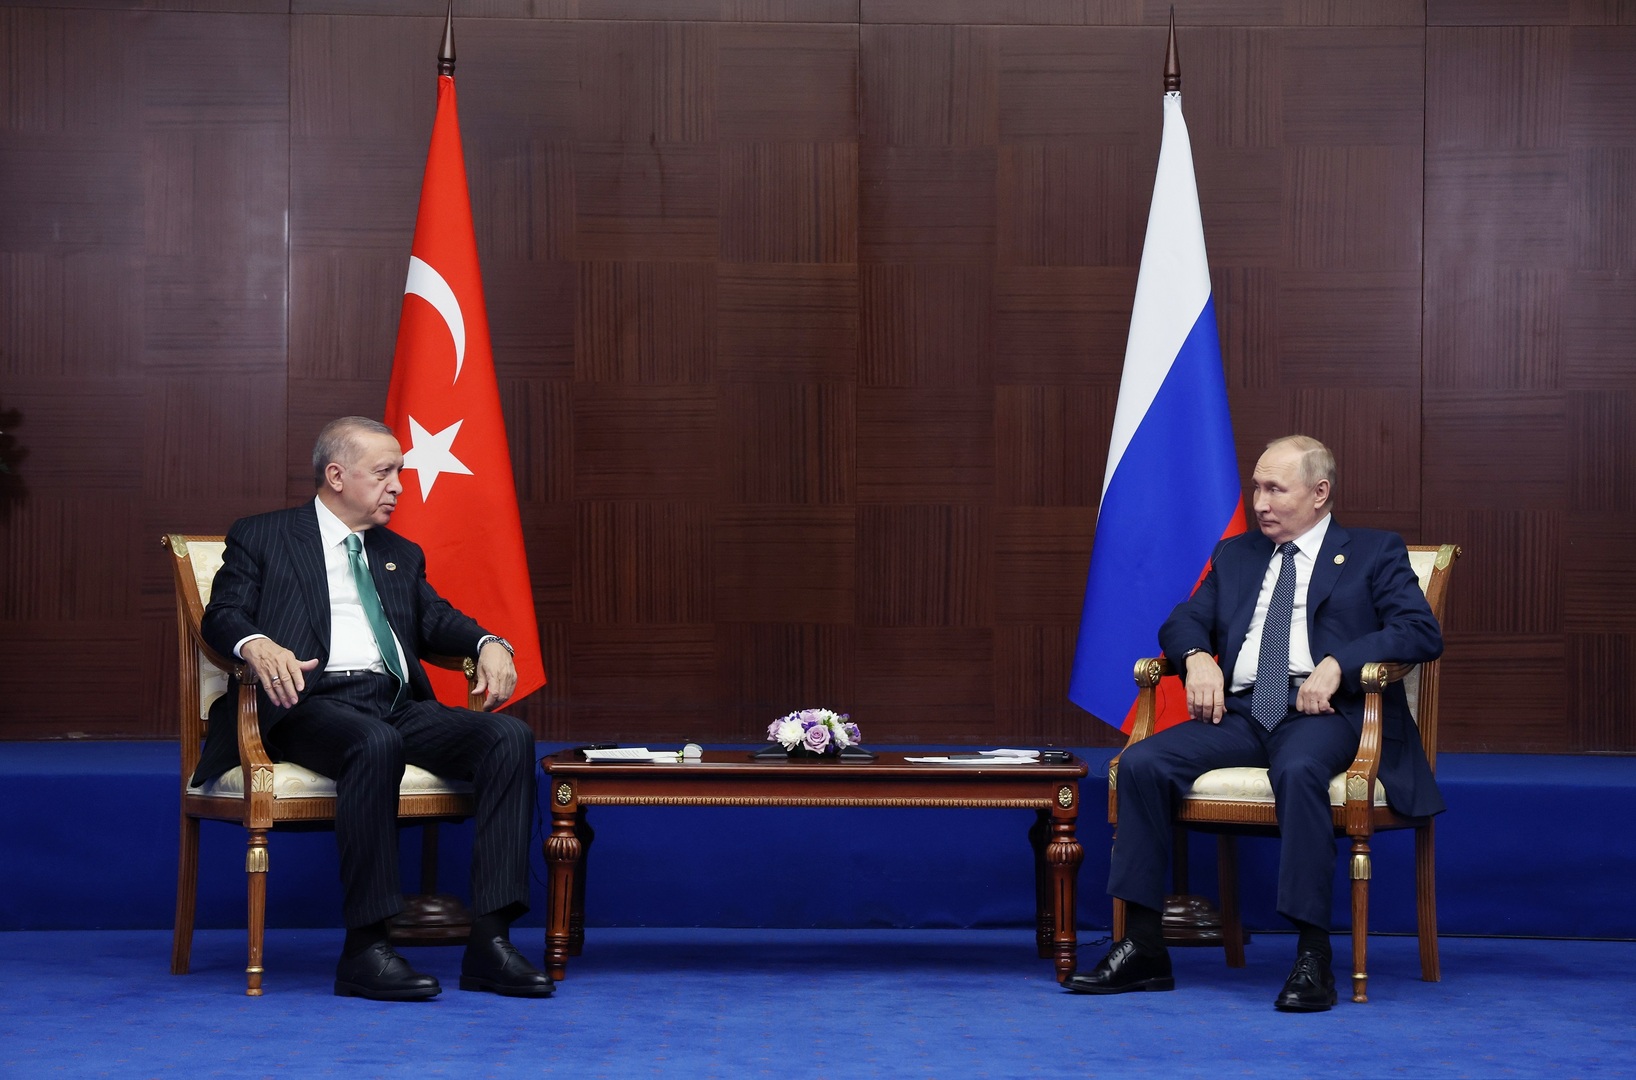 الكرملين يعلن عن زيارة مرتقبة لبوتين إلى تركيا